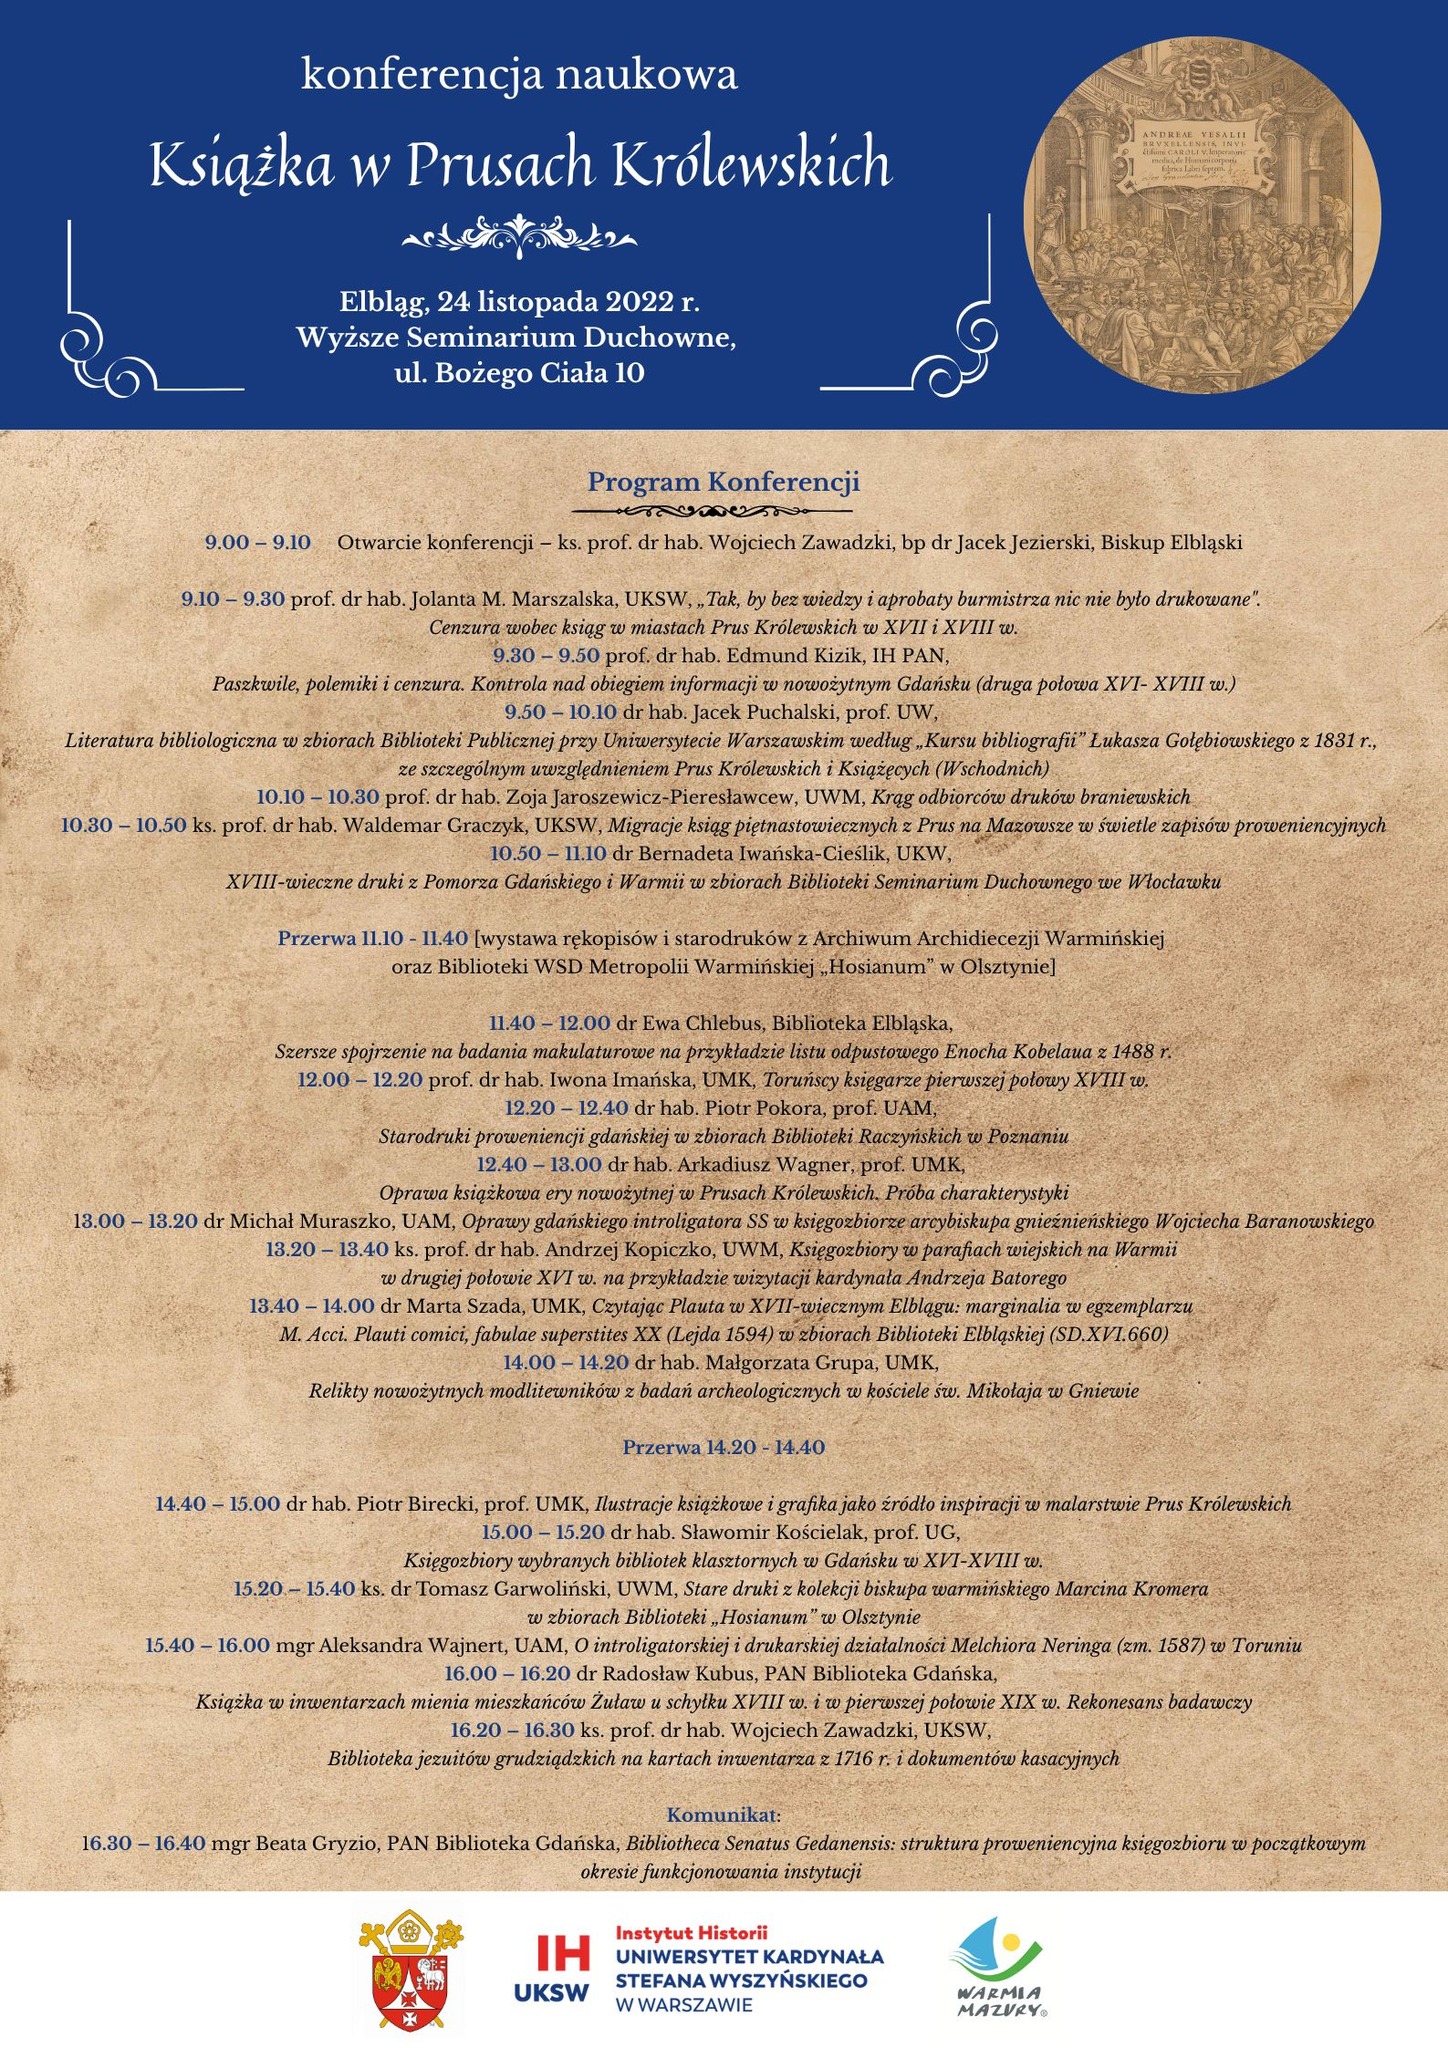 Konferencja naukowa „Książka w Prusach Królewskich” – zaproszenie